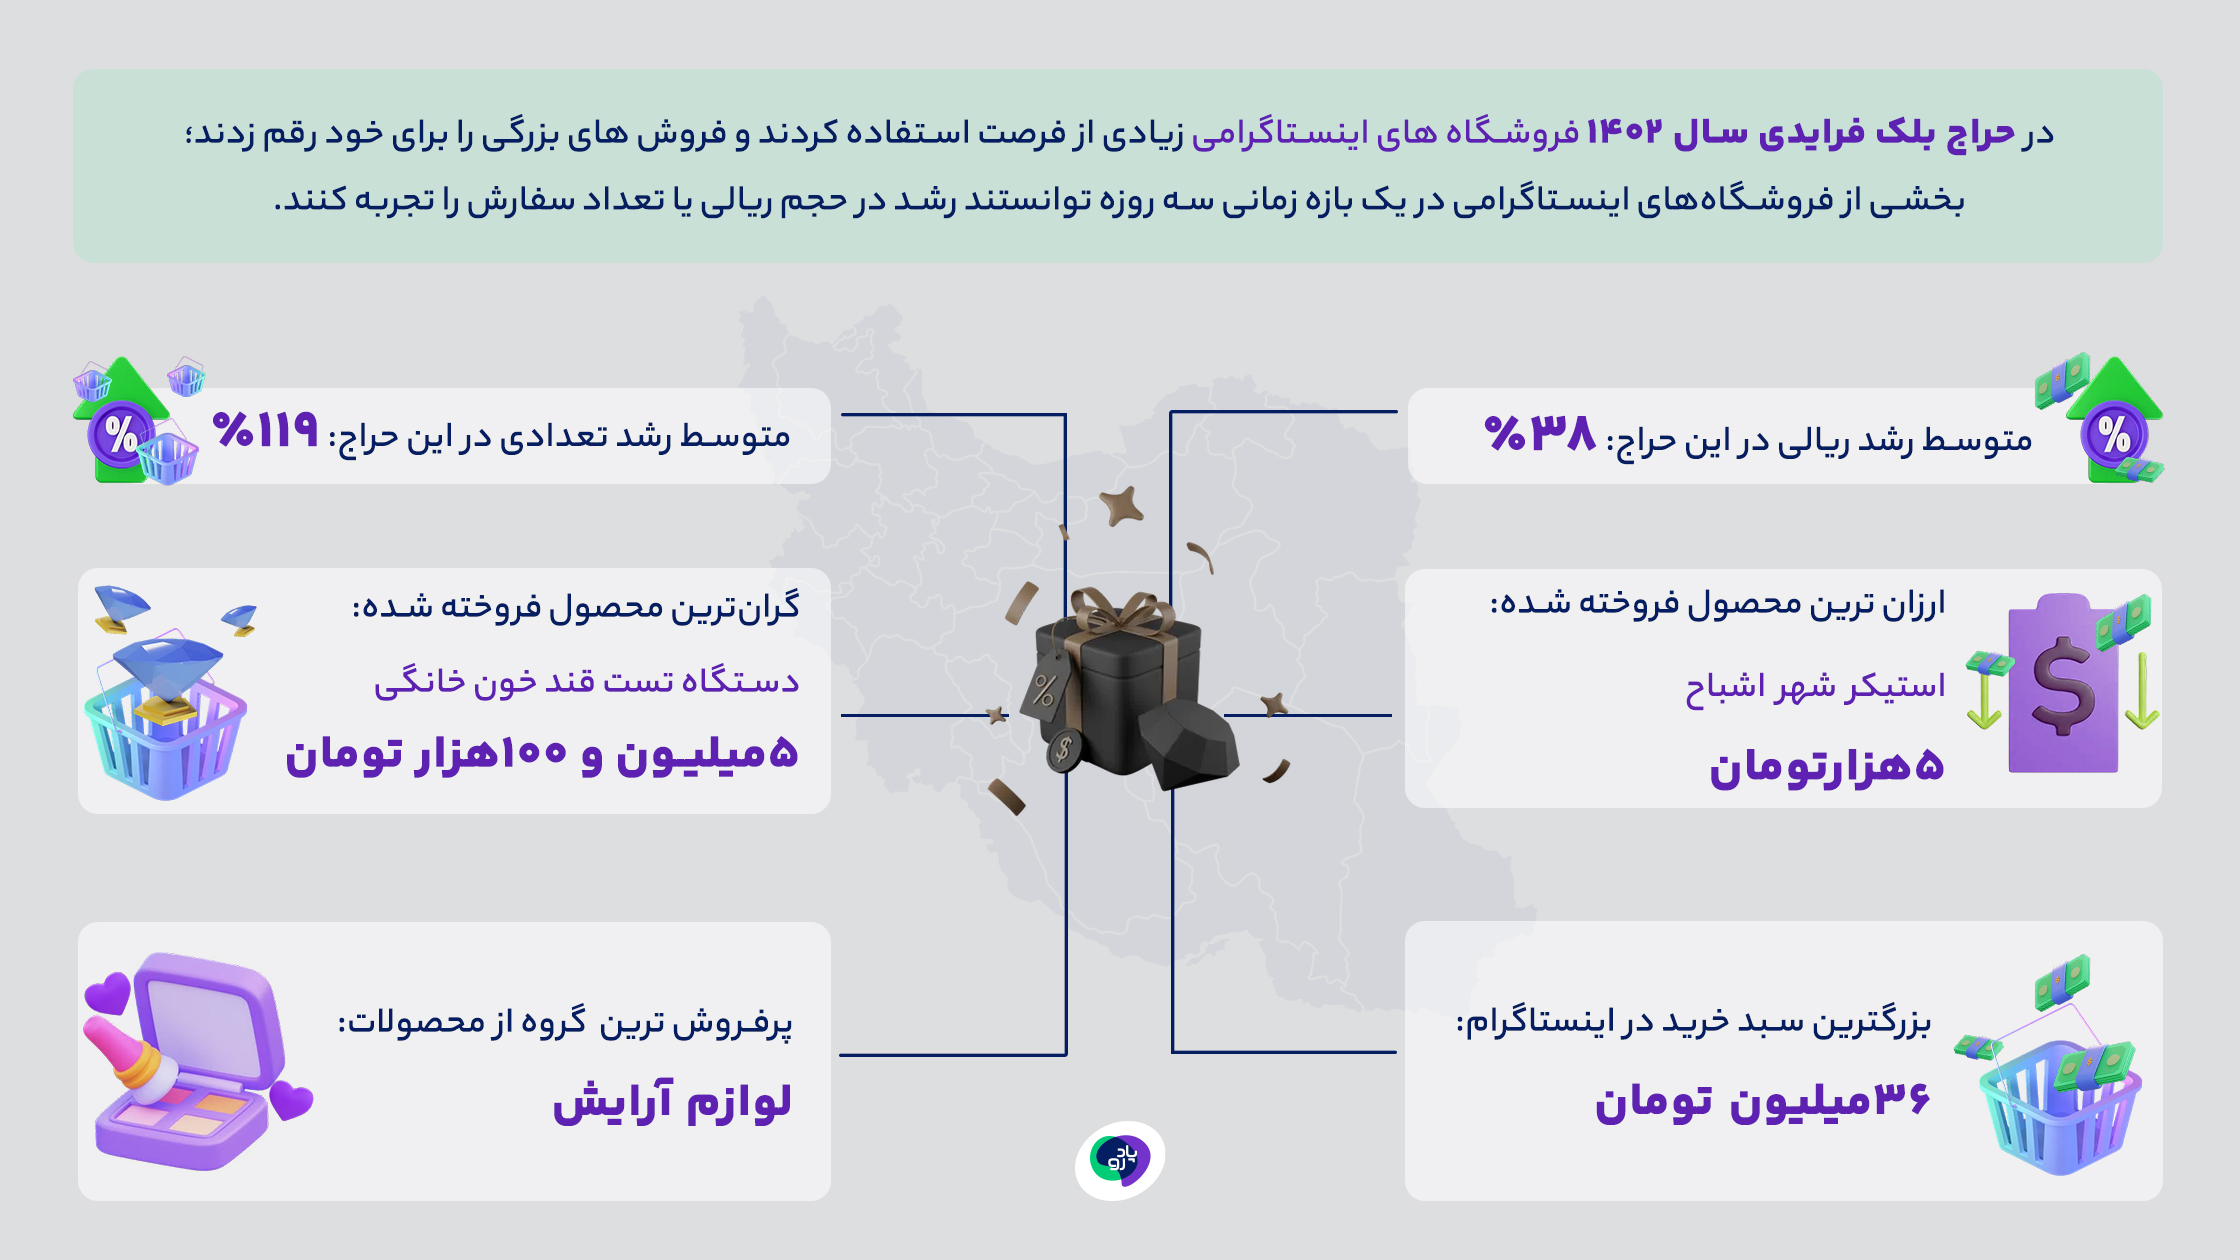 بلک فرایدی 1402 در اینستاگرام کاربران ایرانی